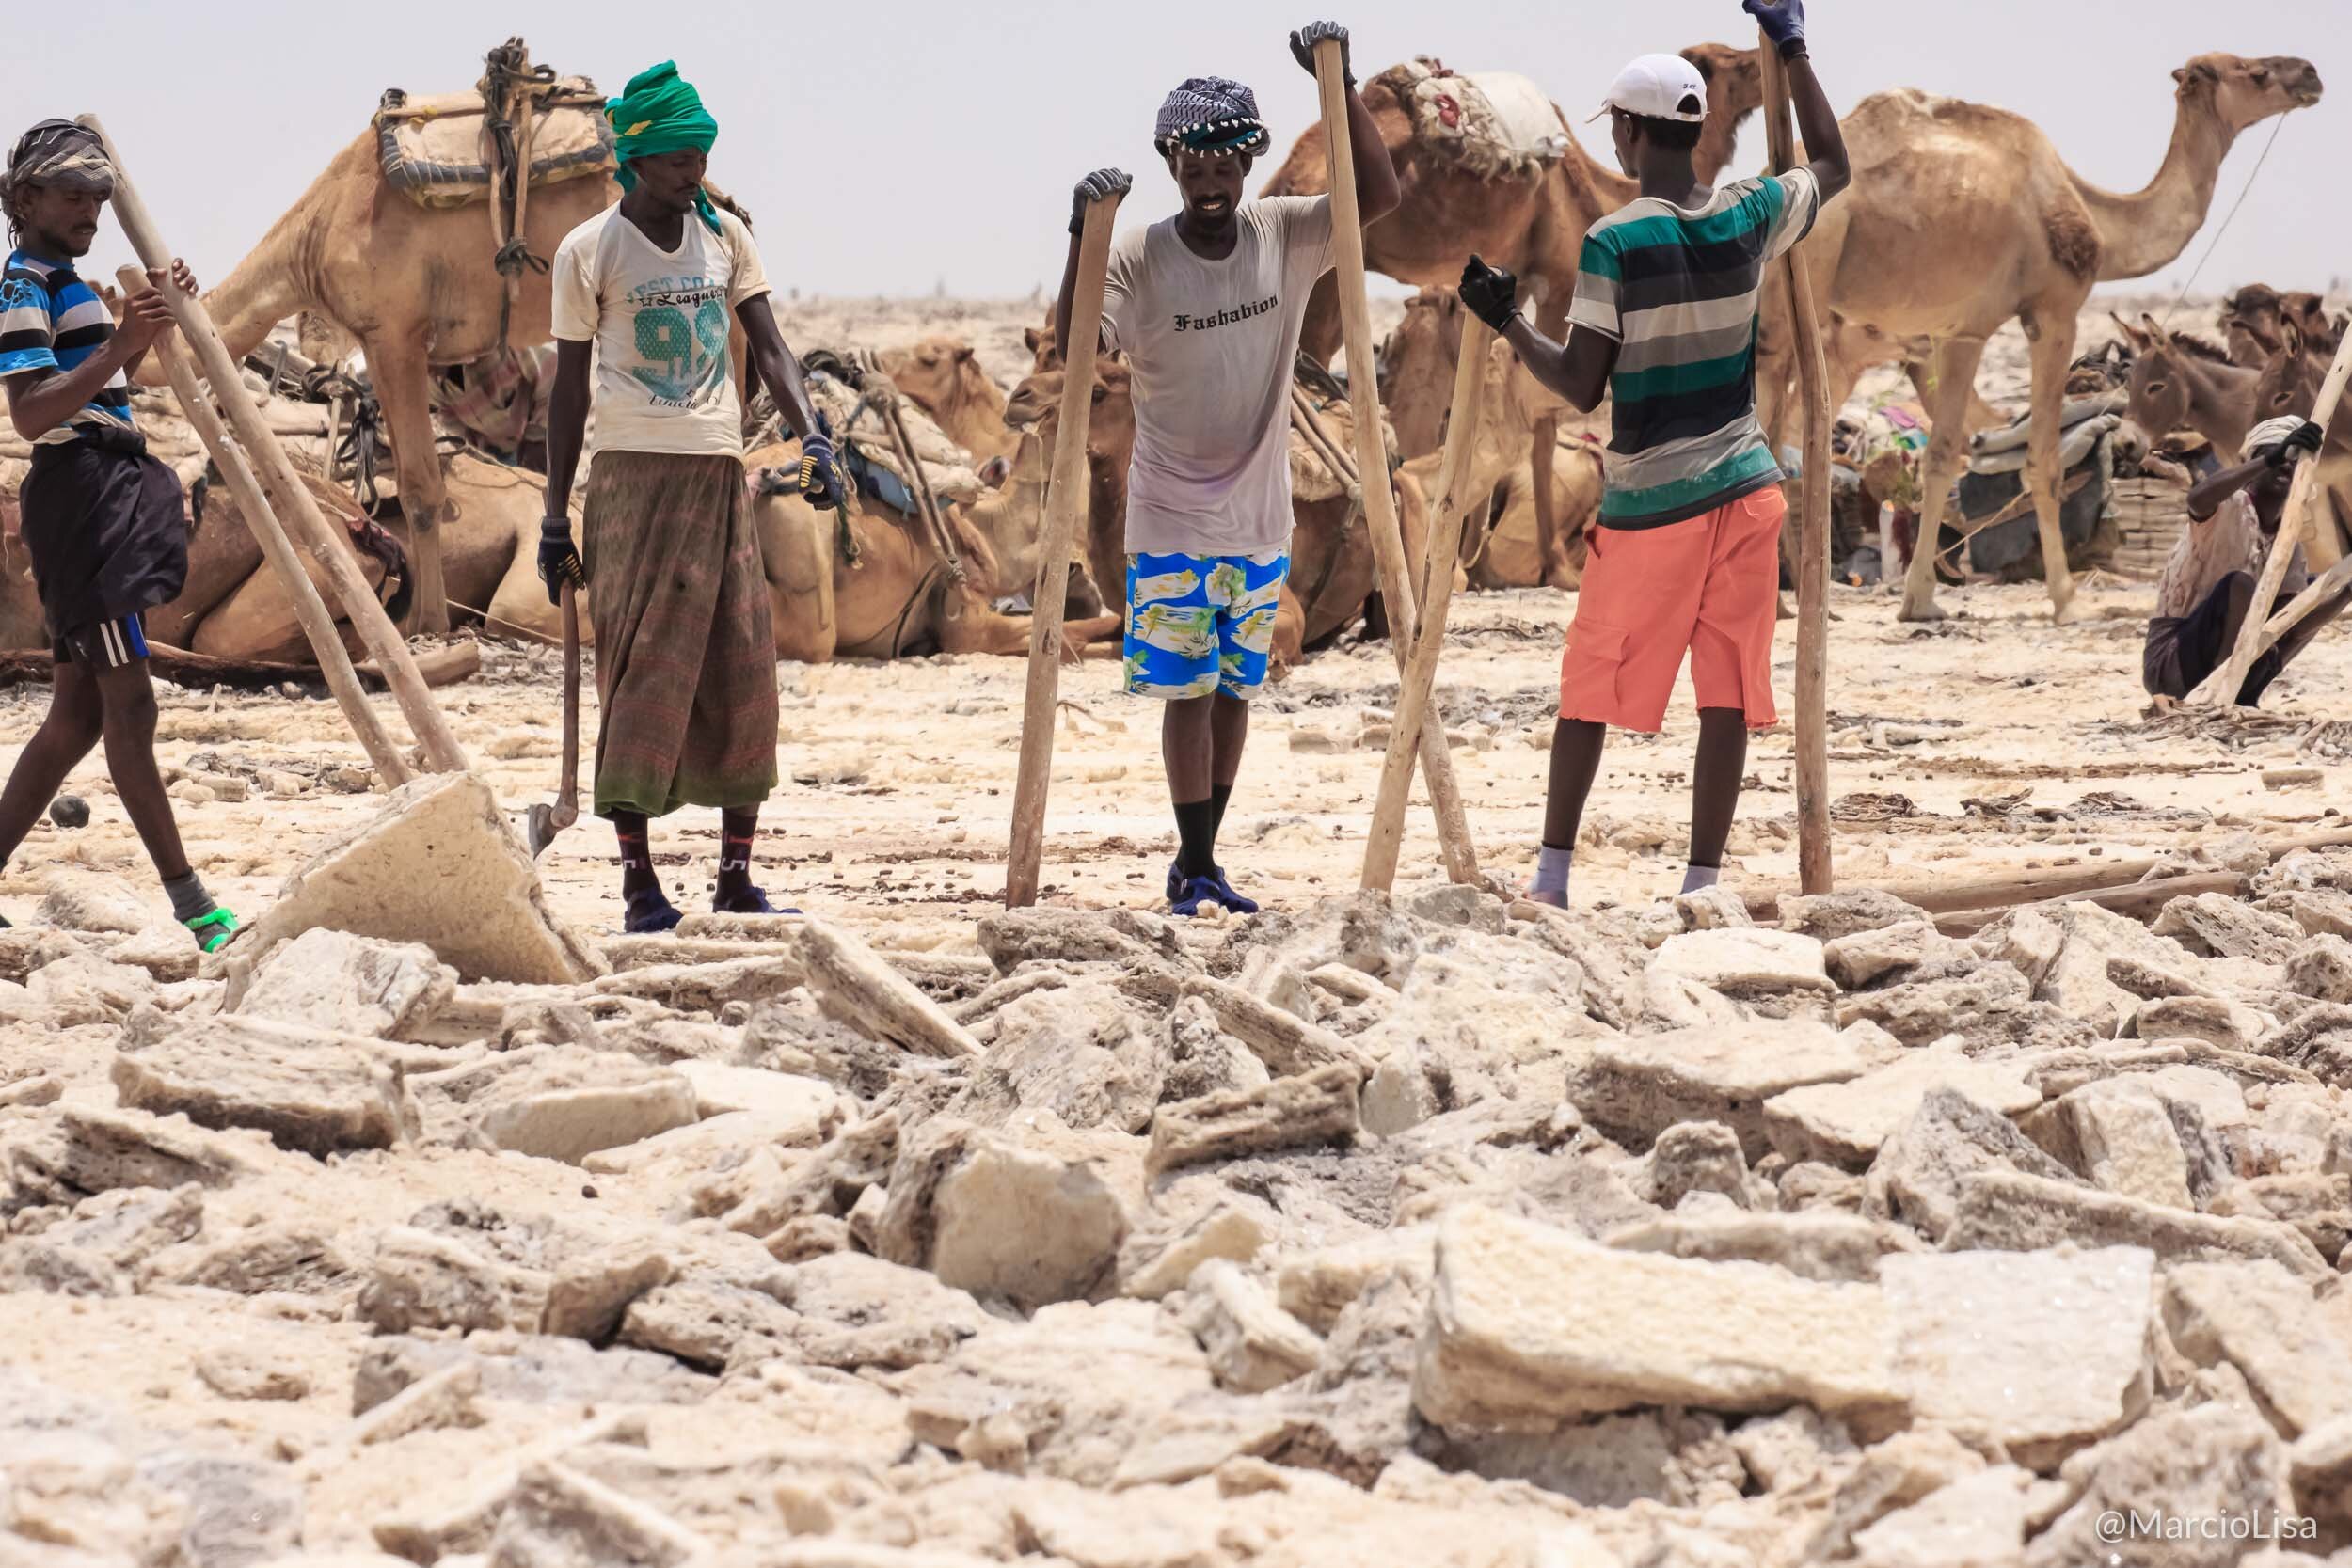 Extração de sal no Deserto de Danakil, Etiopia